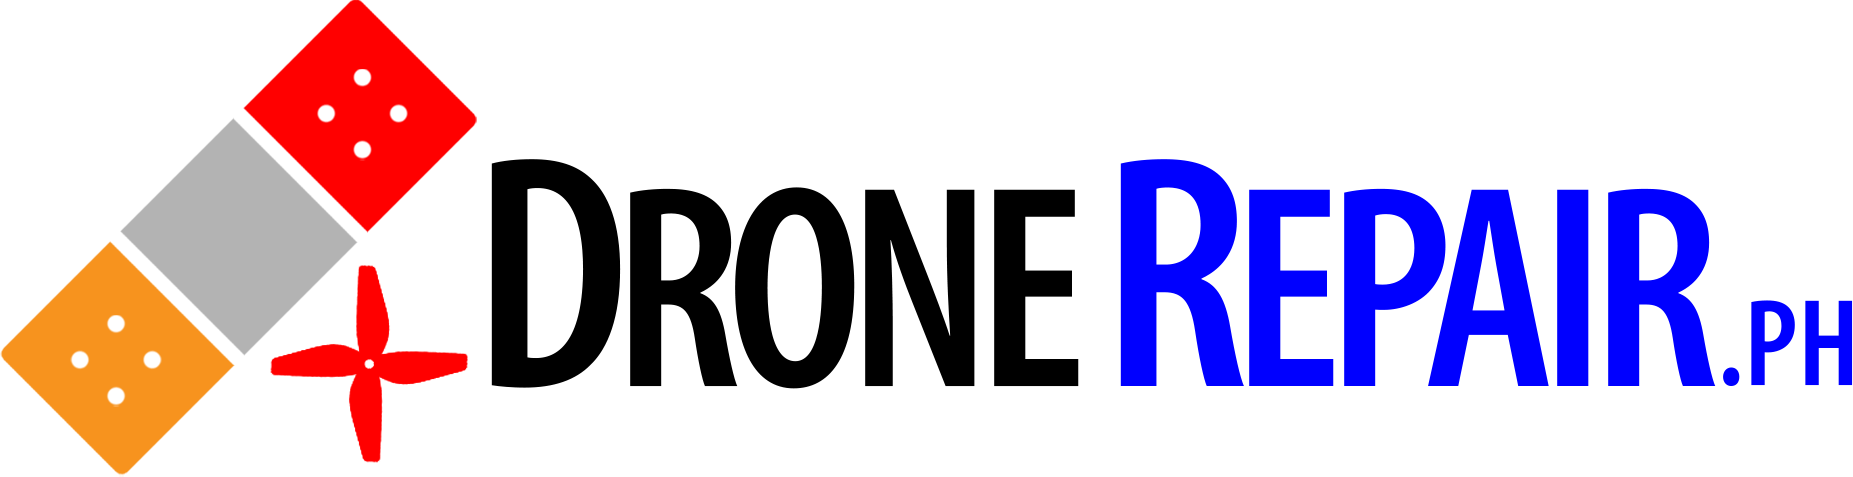 drone repair ph logo